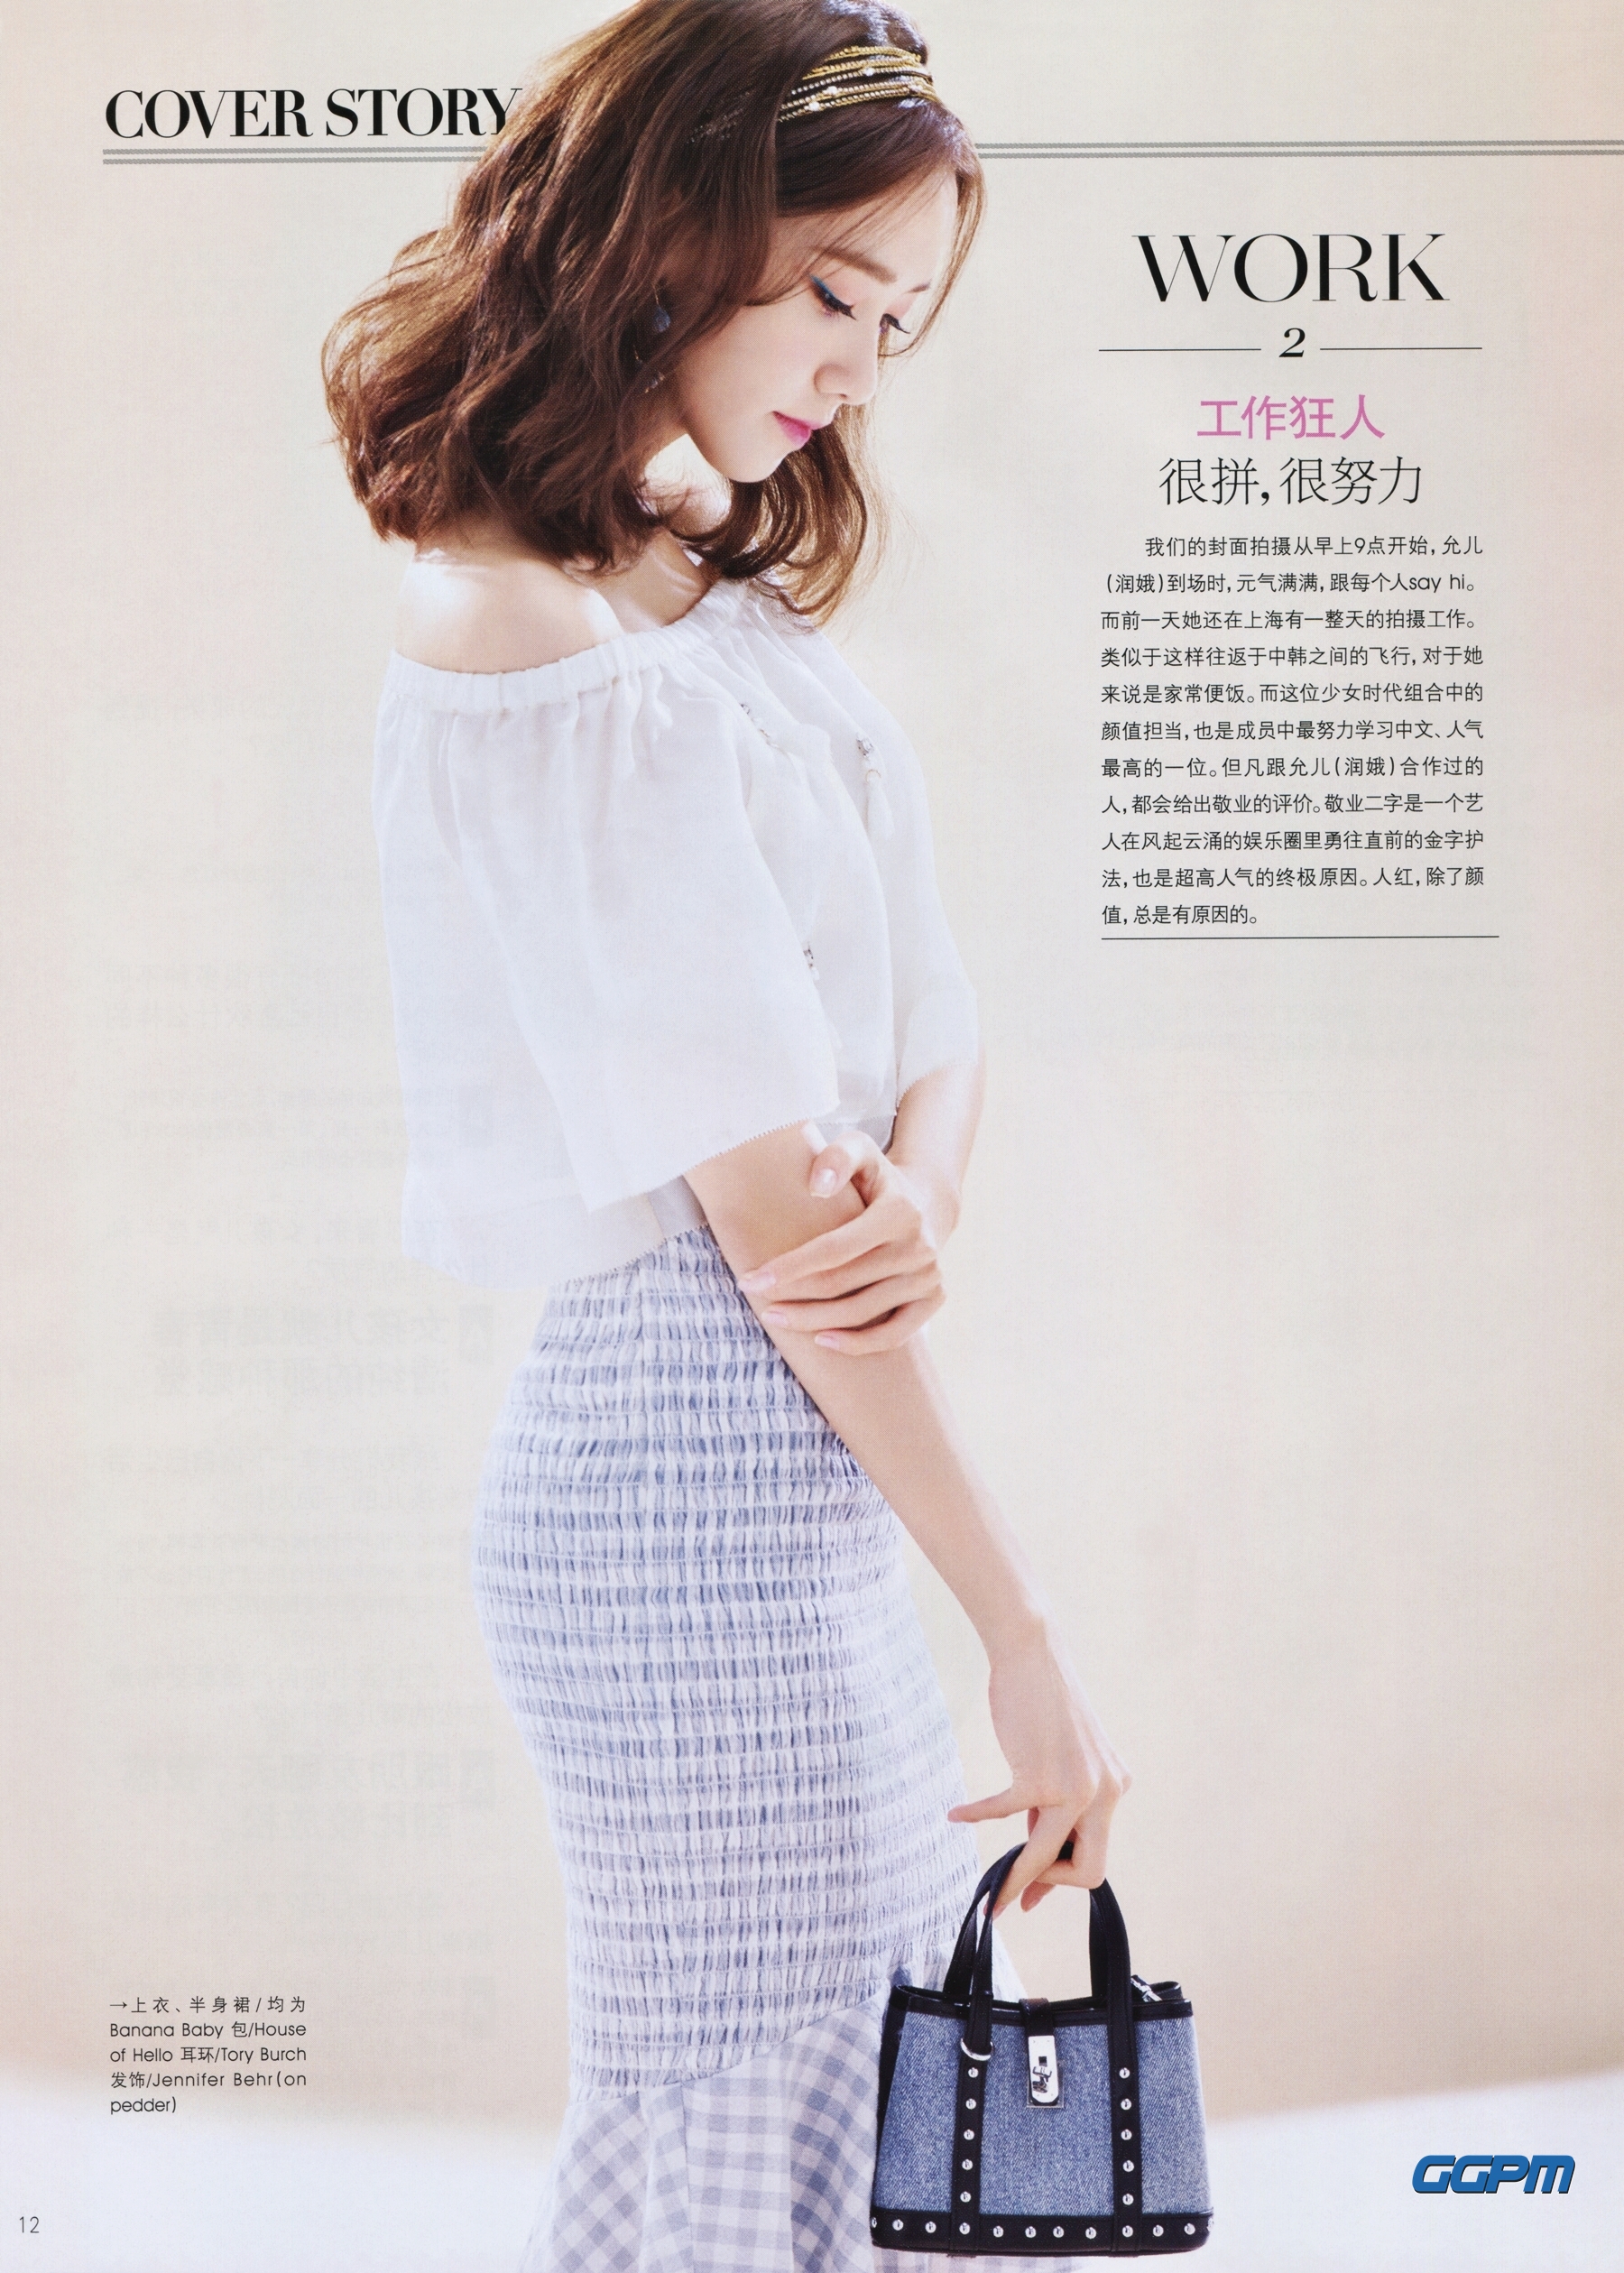 [PIC][17-02-2016]YoonA xuất hiện trên trang bìa ấn phẩm tháng 3 của tạp chí Trung Quốc - "Ray Li" Nws7eX89ZQ